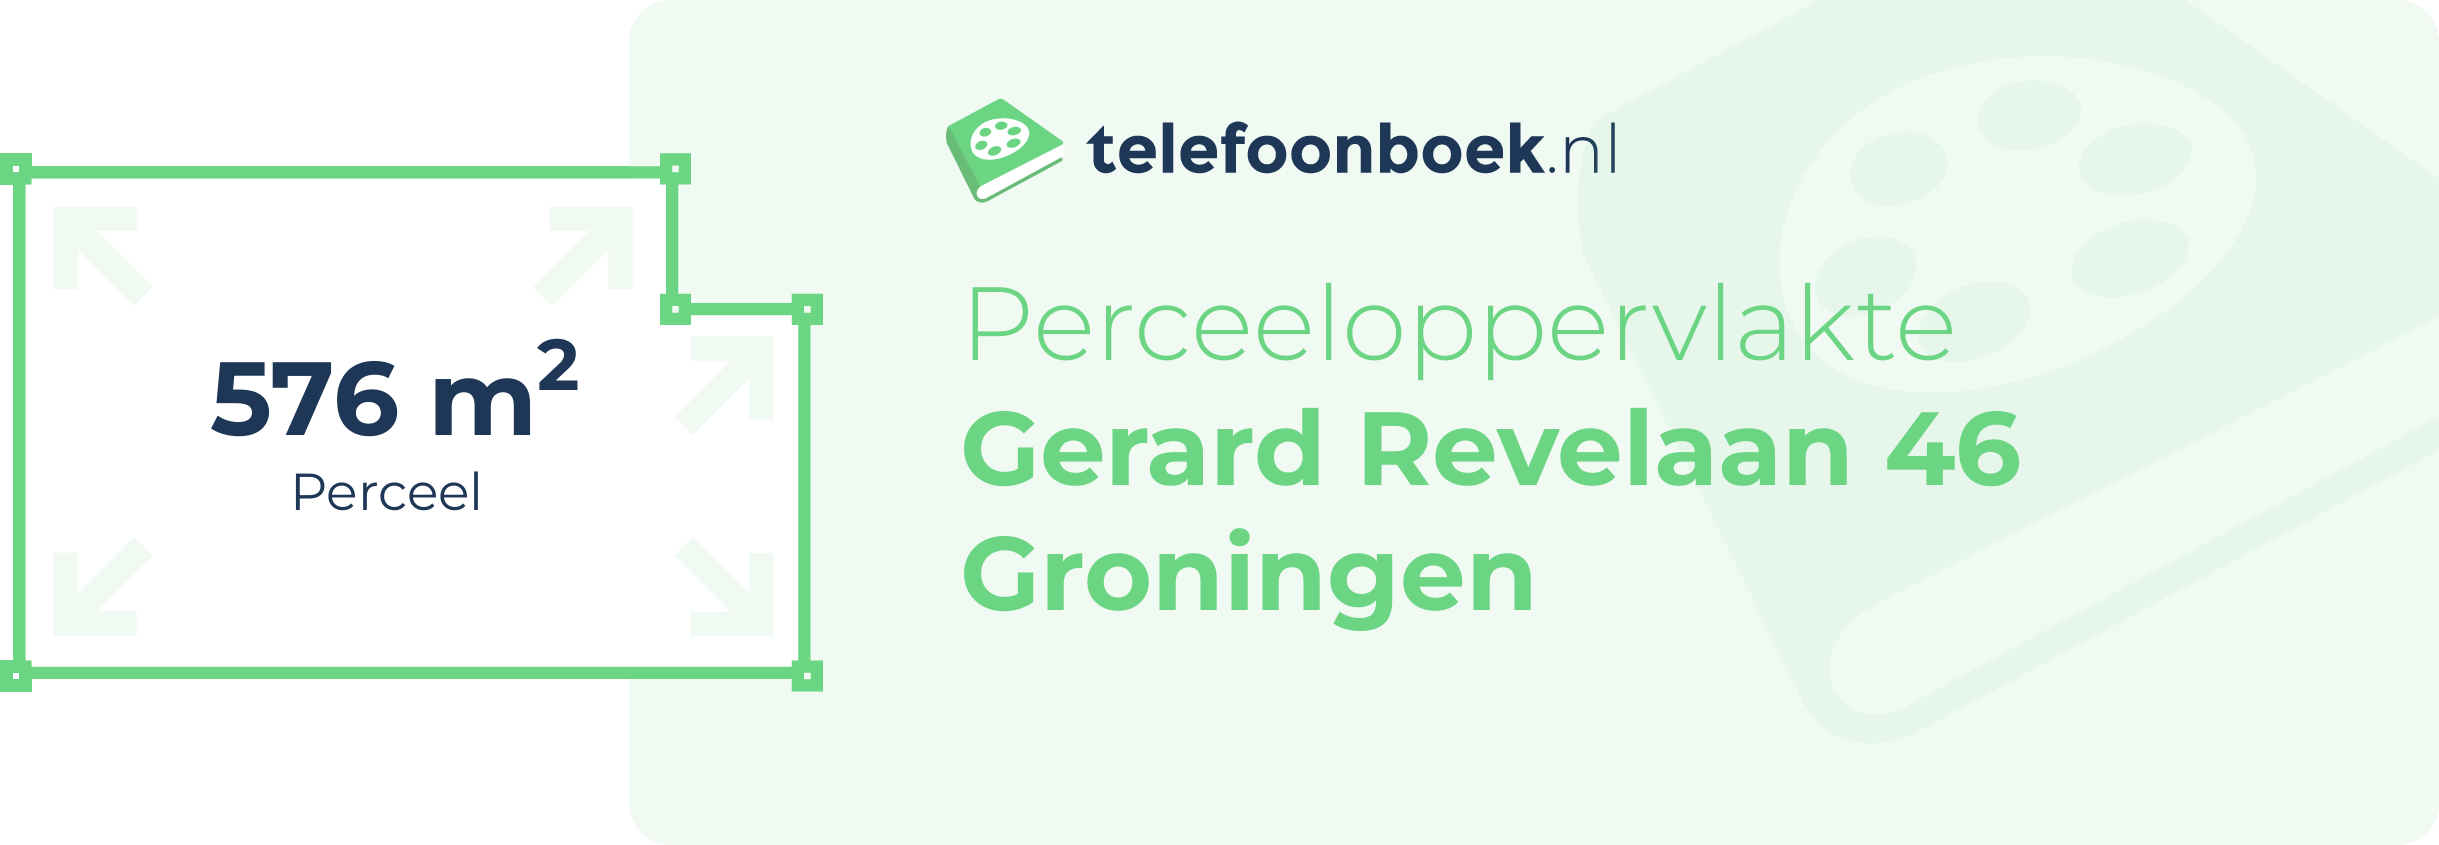 Perceeloppervlakte Gerard Revelaan 46 Groningen